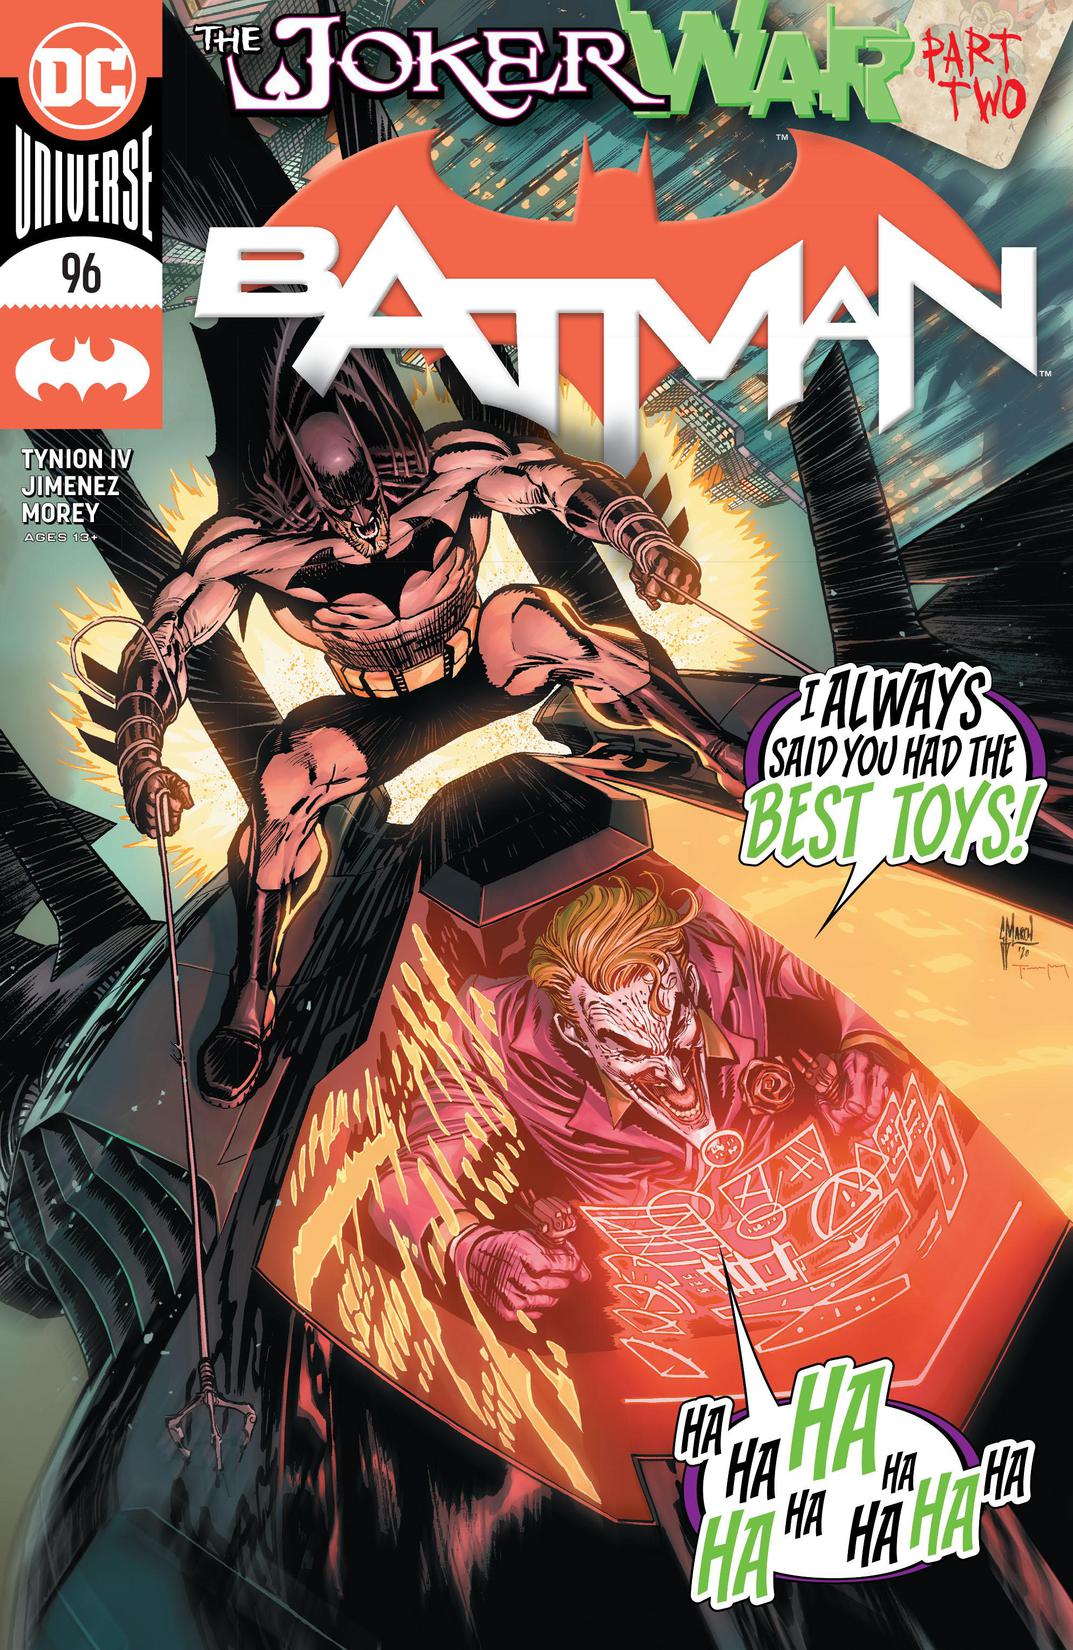 Batman (2016-) #96 preview images